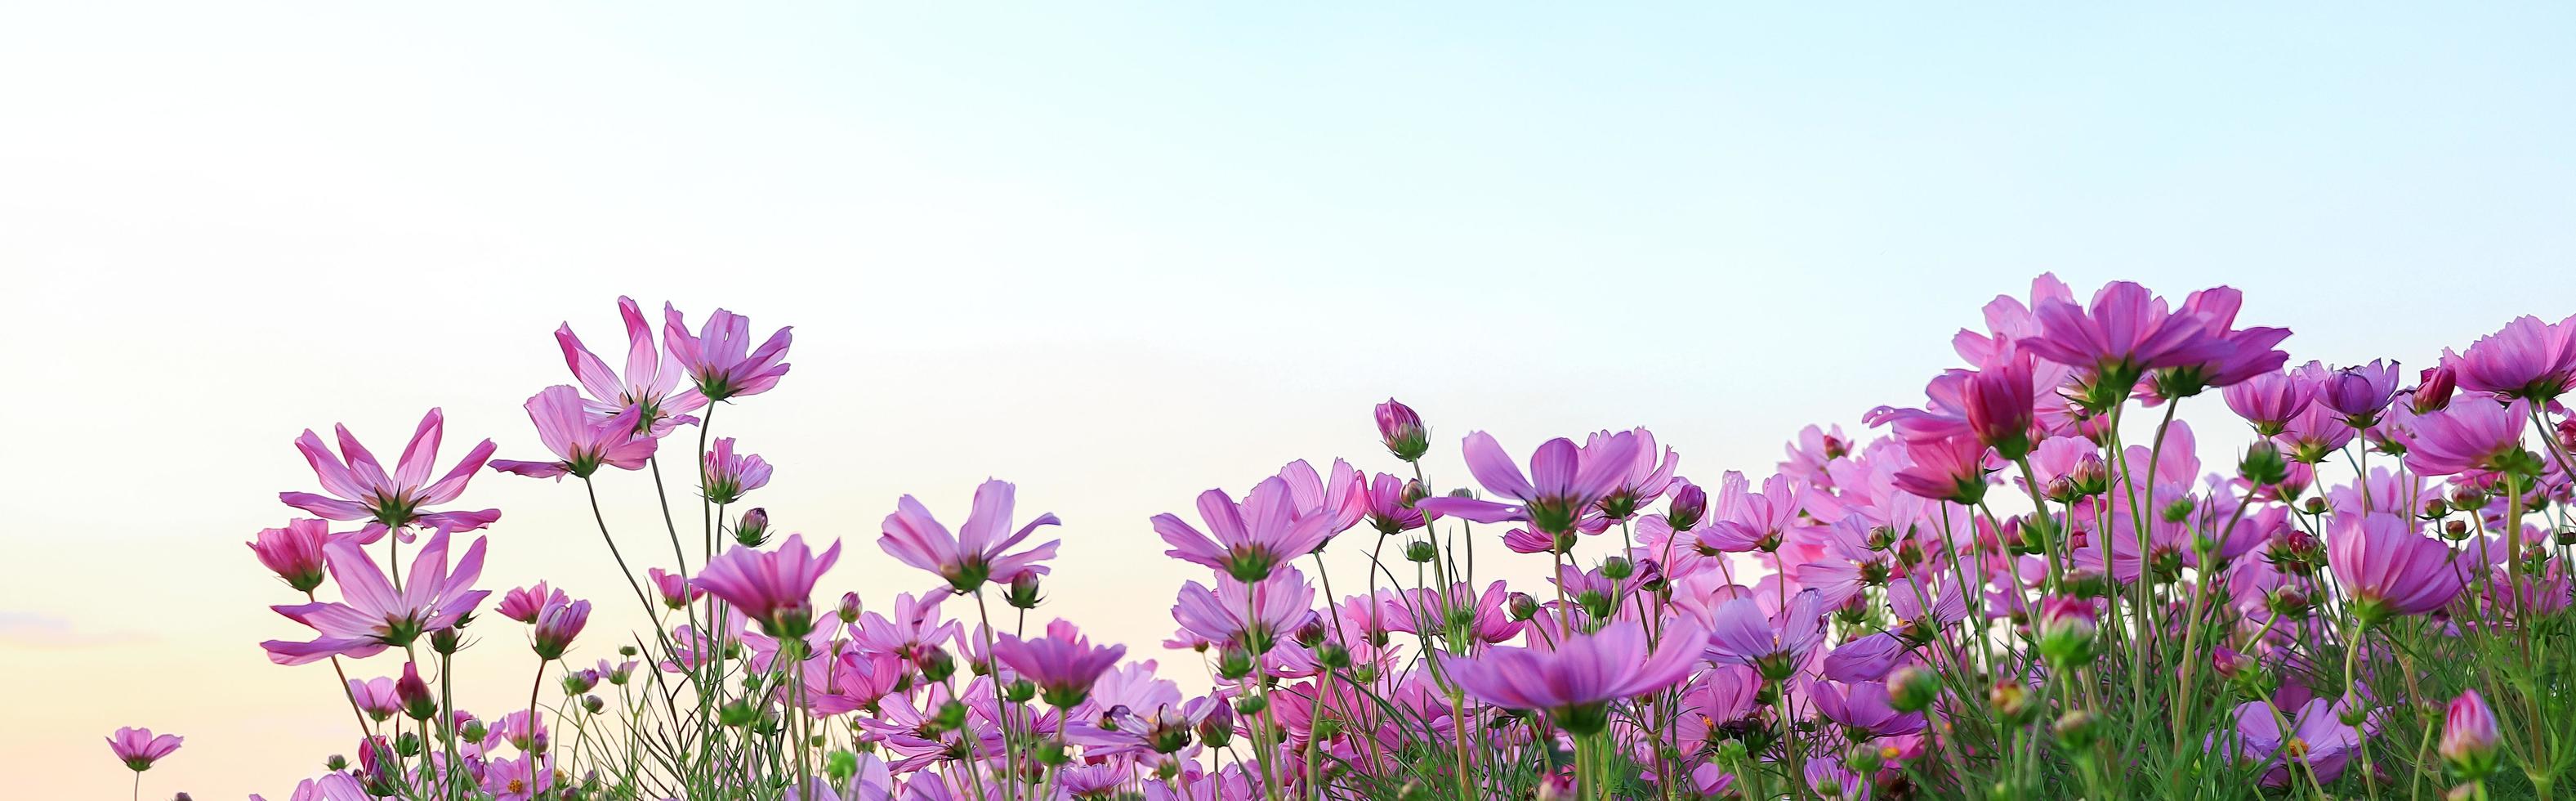 Kosmosblumen blühen wunderschön im natürlichen Garten foto